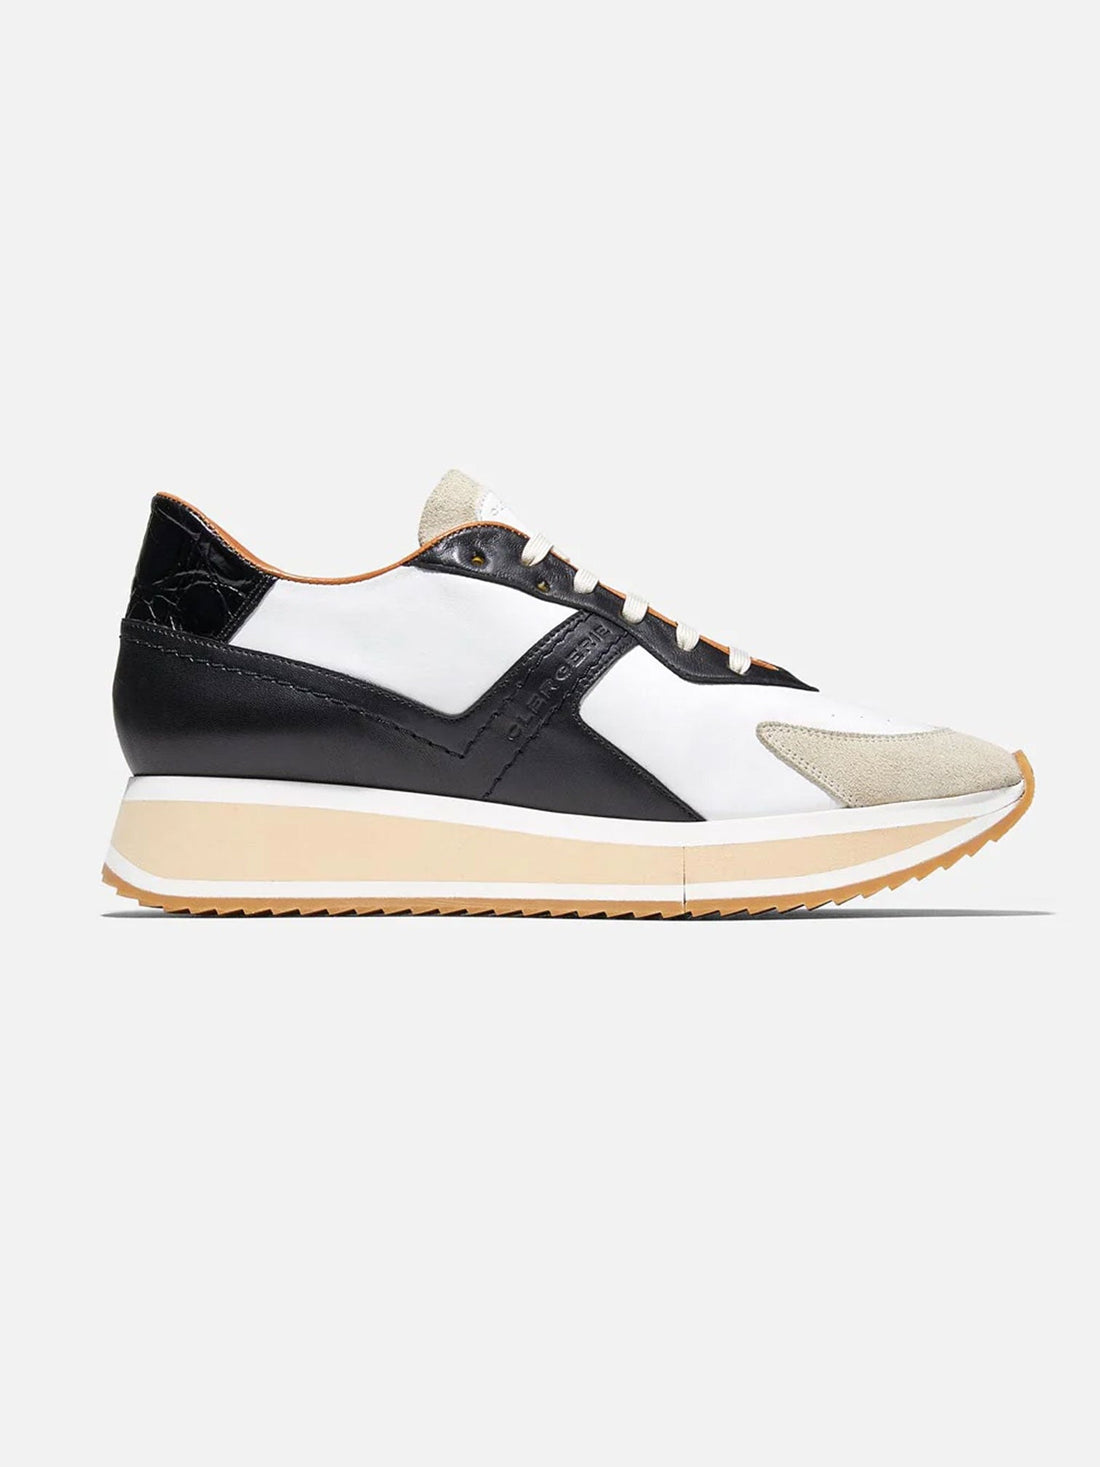 SNEAKERS - ORVIL sneakers, black, white and beige croco - 3606063637961 - Clergerie Paris - Europe